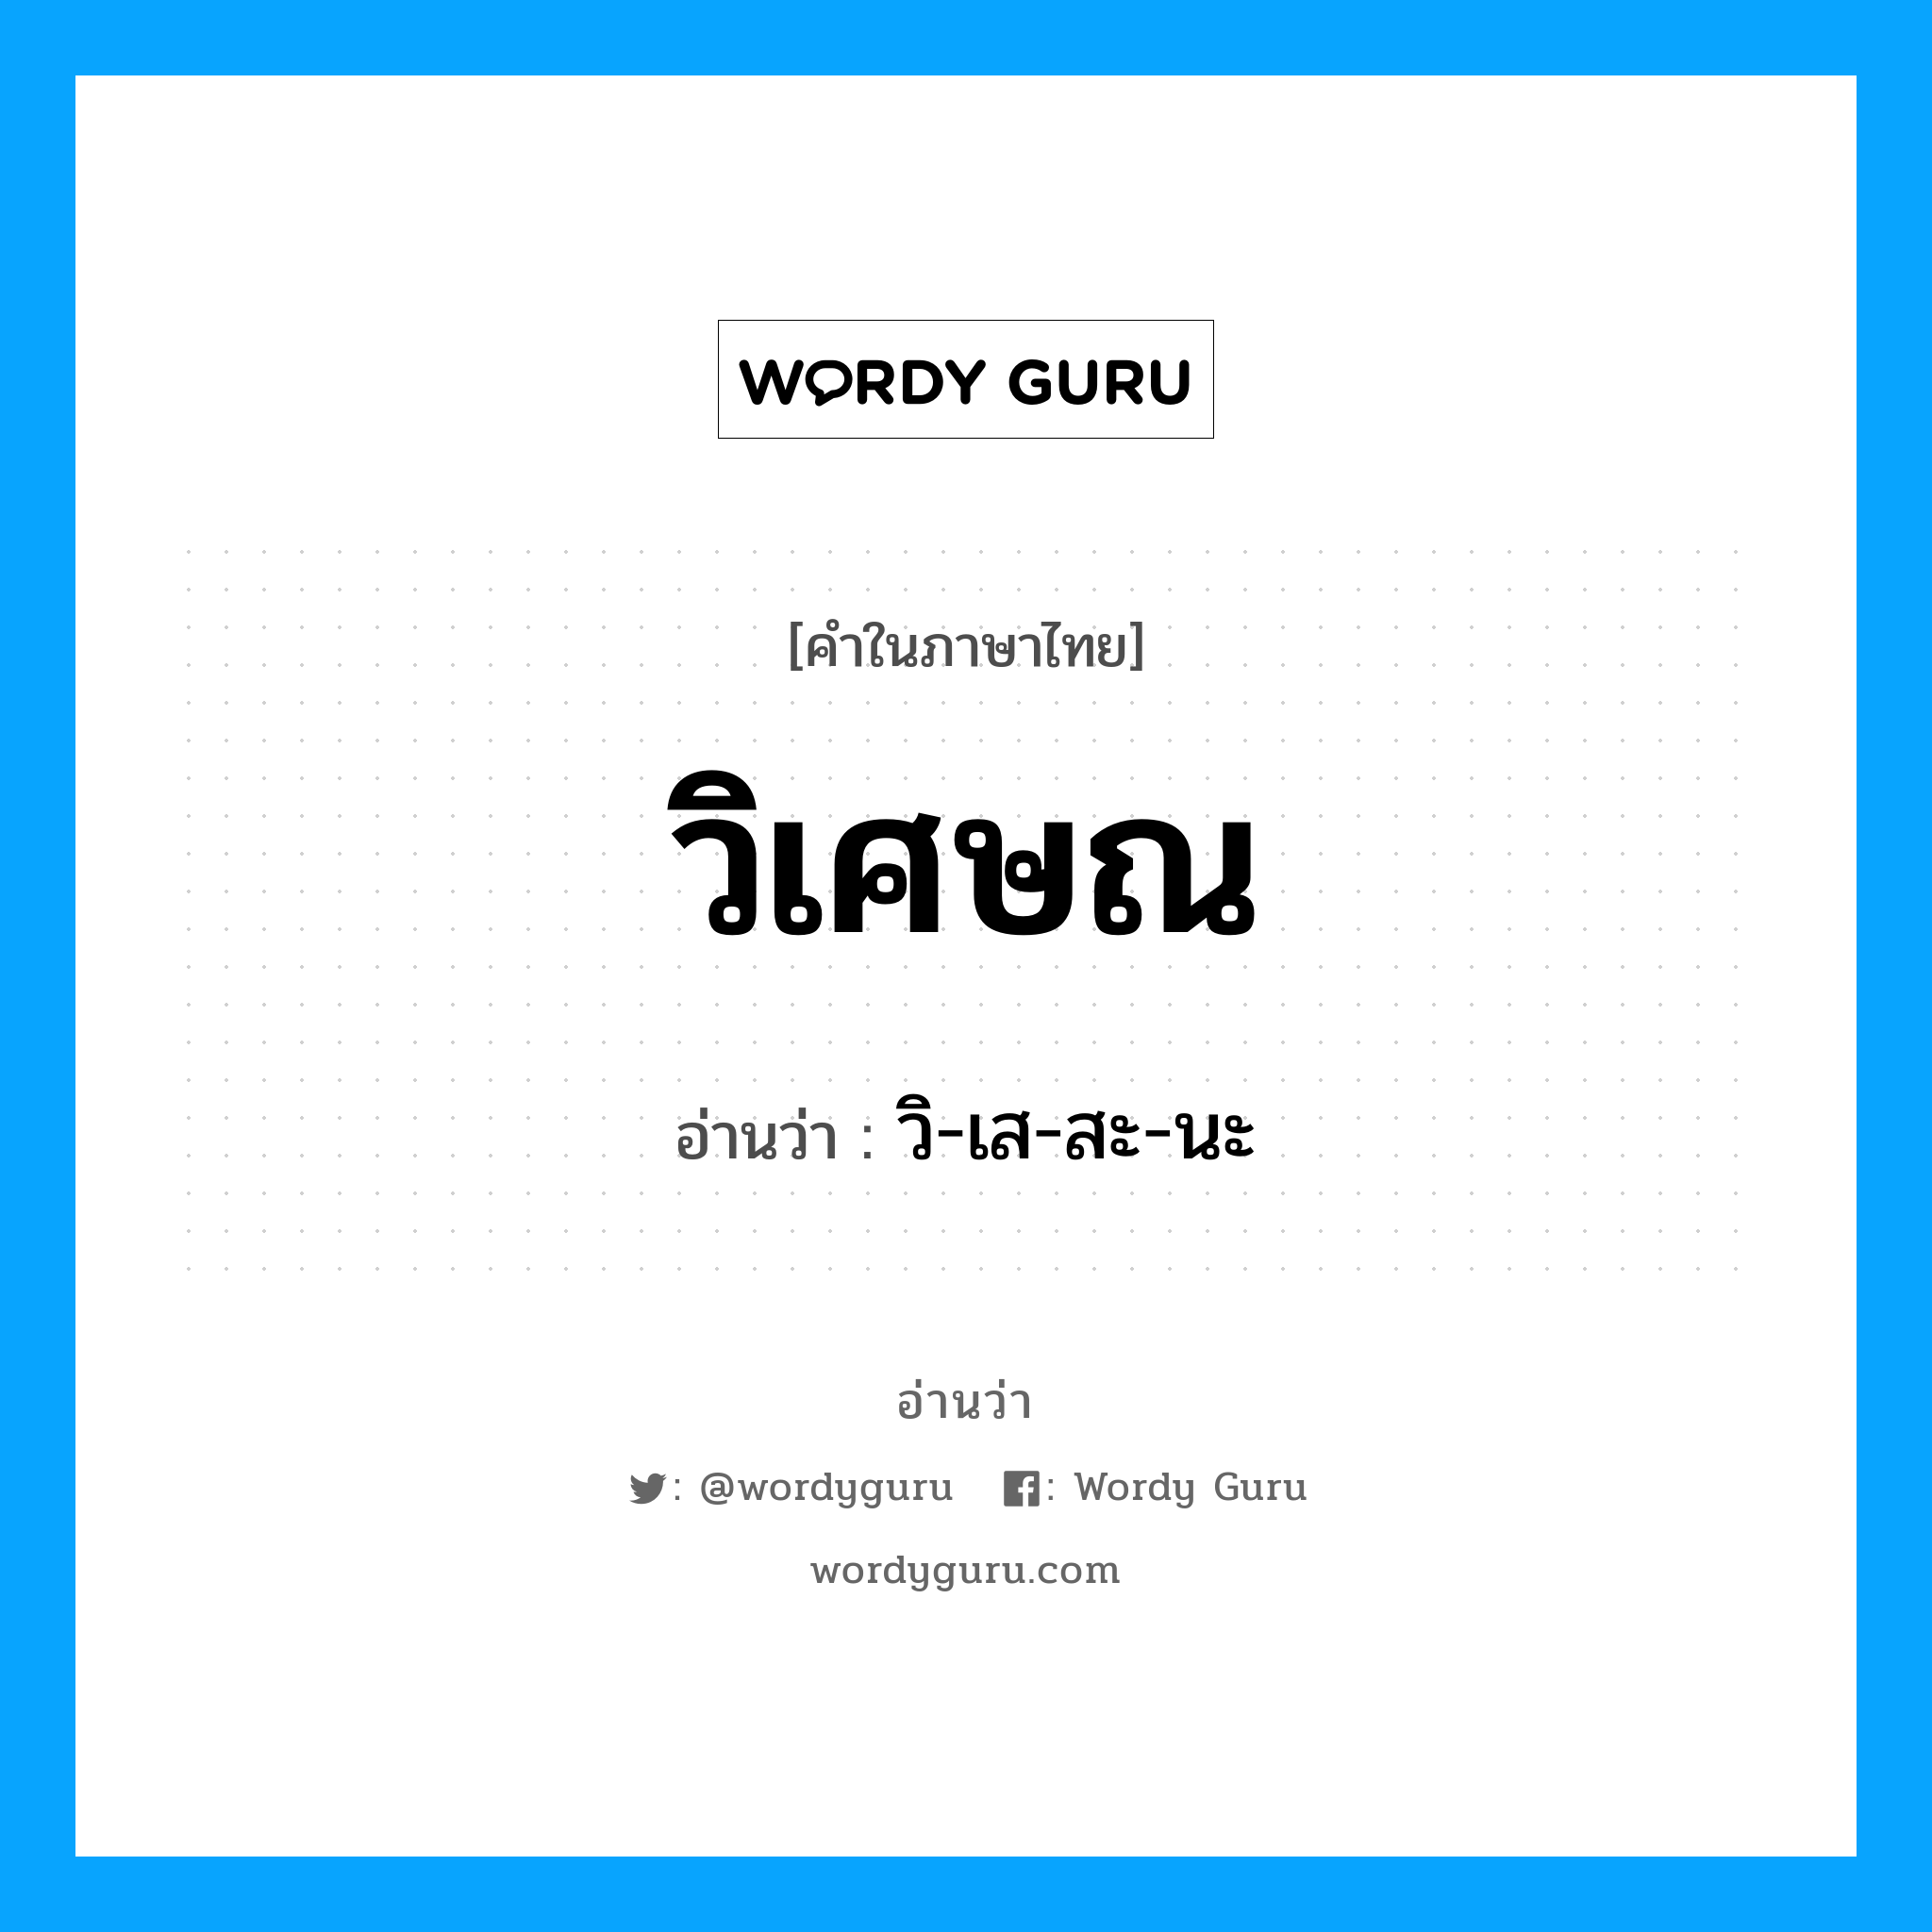 วิ-เส-สะ-นะ เป็นคำอ่านของคำไหน?, คำในภาษาไทย วิ-เส-สะ-นะ อ่านว่า วิเศษณ